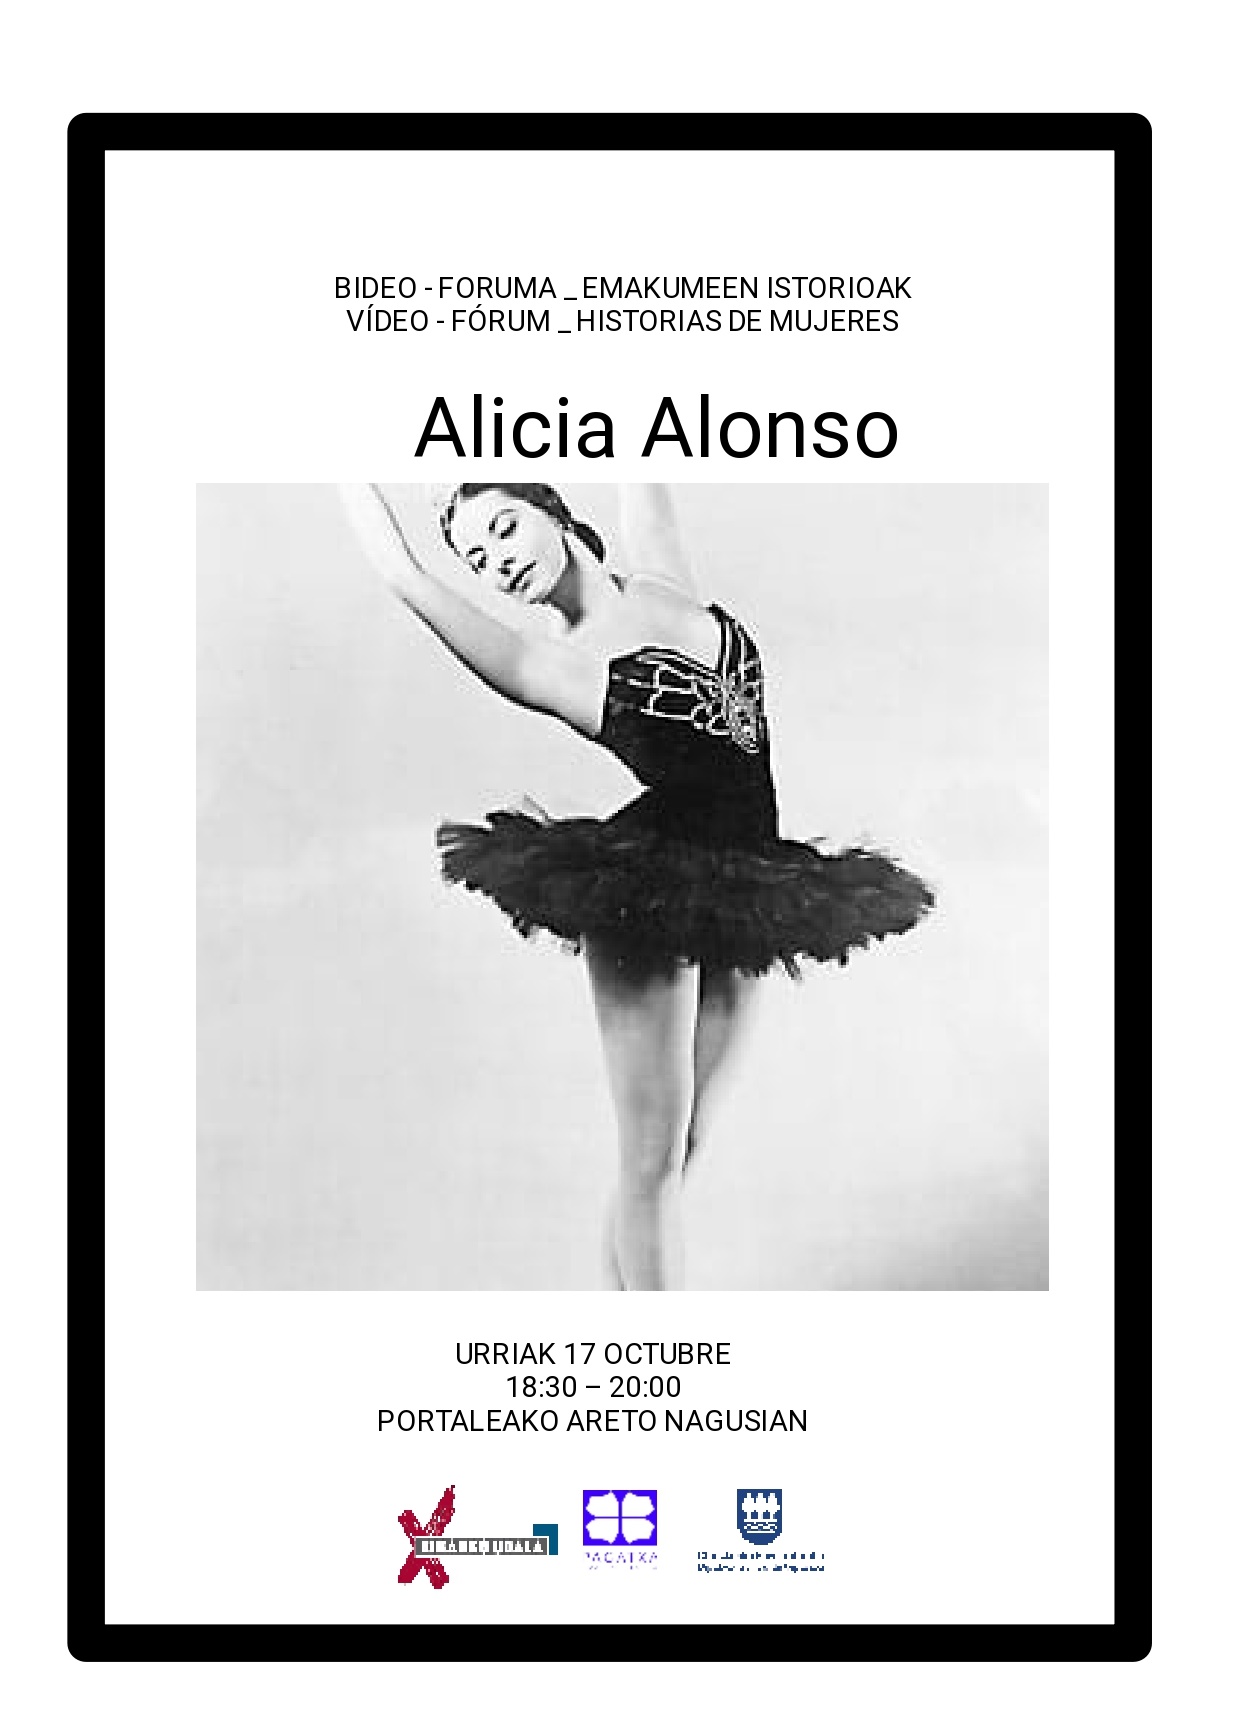 Video-Forum de historias de mujeres: Alicia Alonso